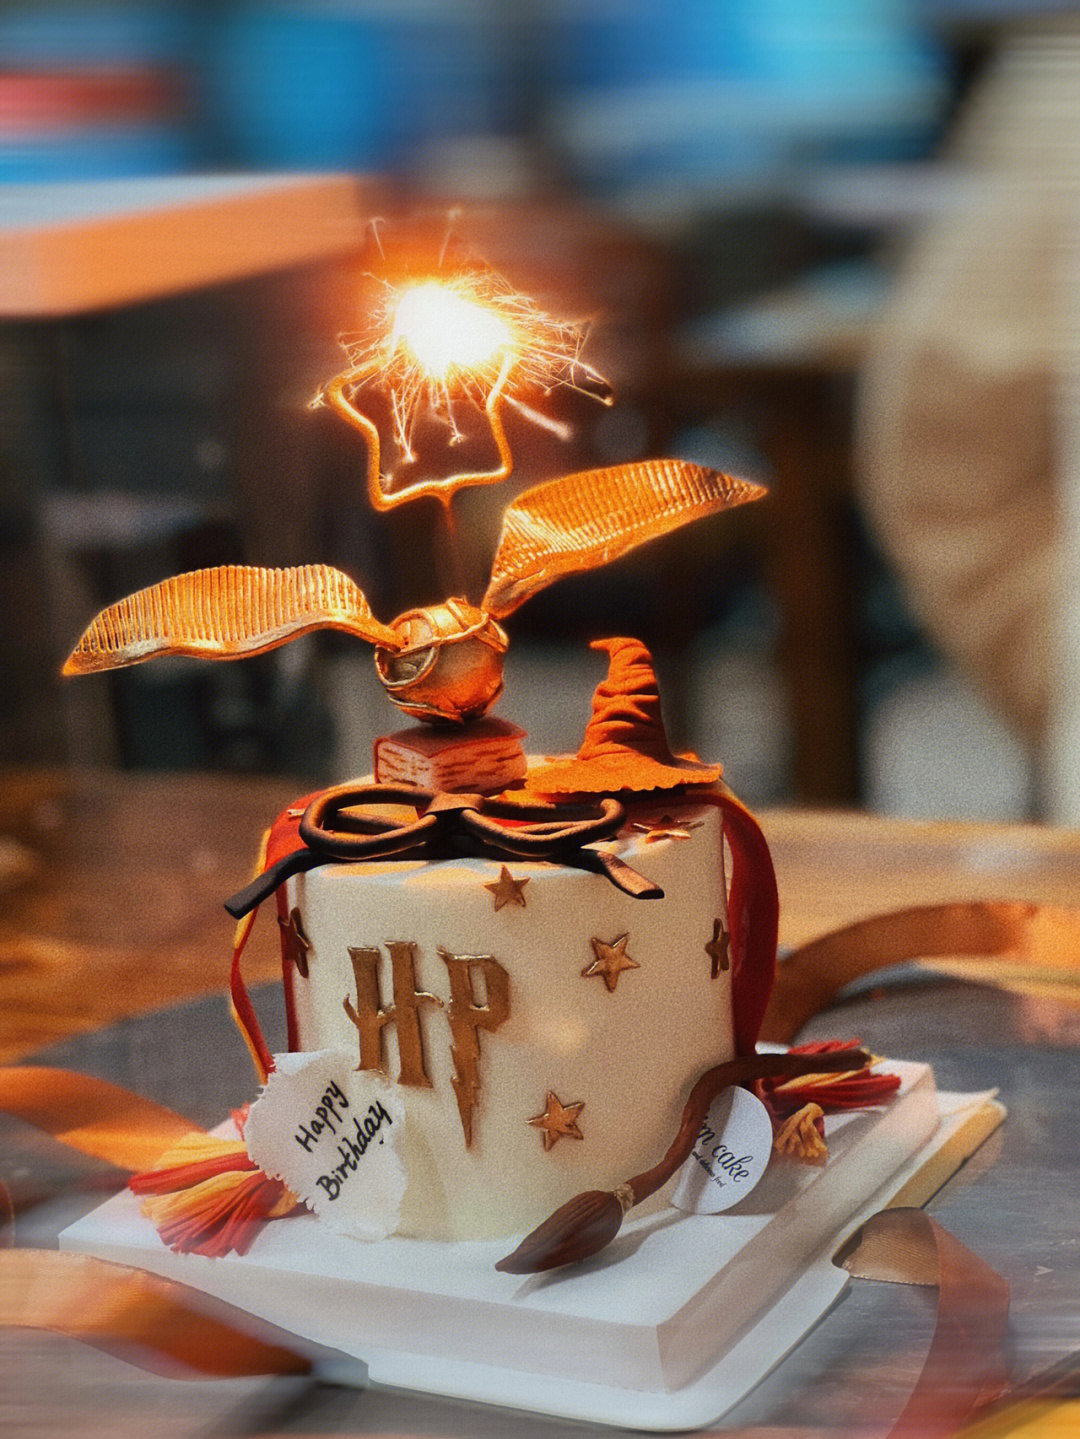 哈利波特生日蛋糕截图图片